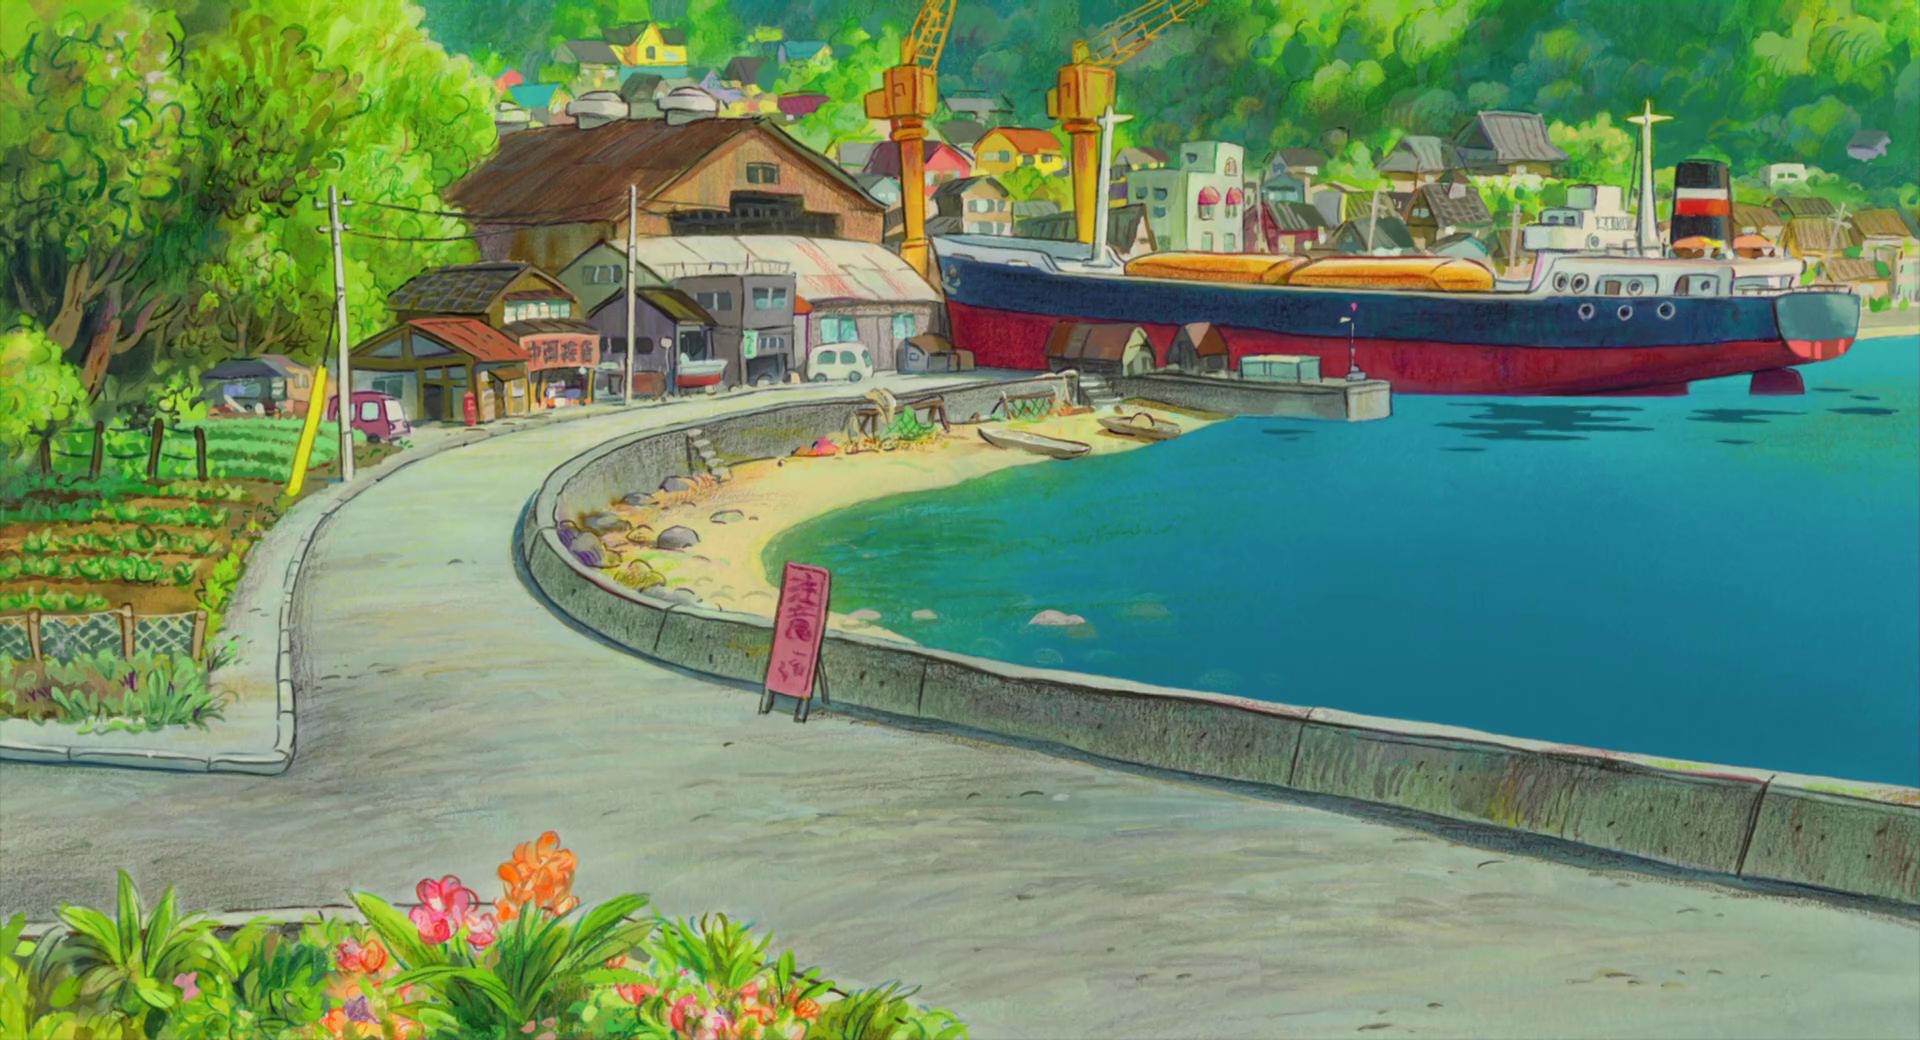 Mời tải về hàng trăm bức ảnh trong phim hoạt hình của Ghibli Studio chia sẻ